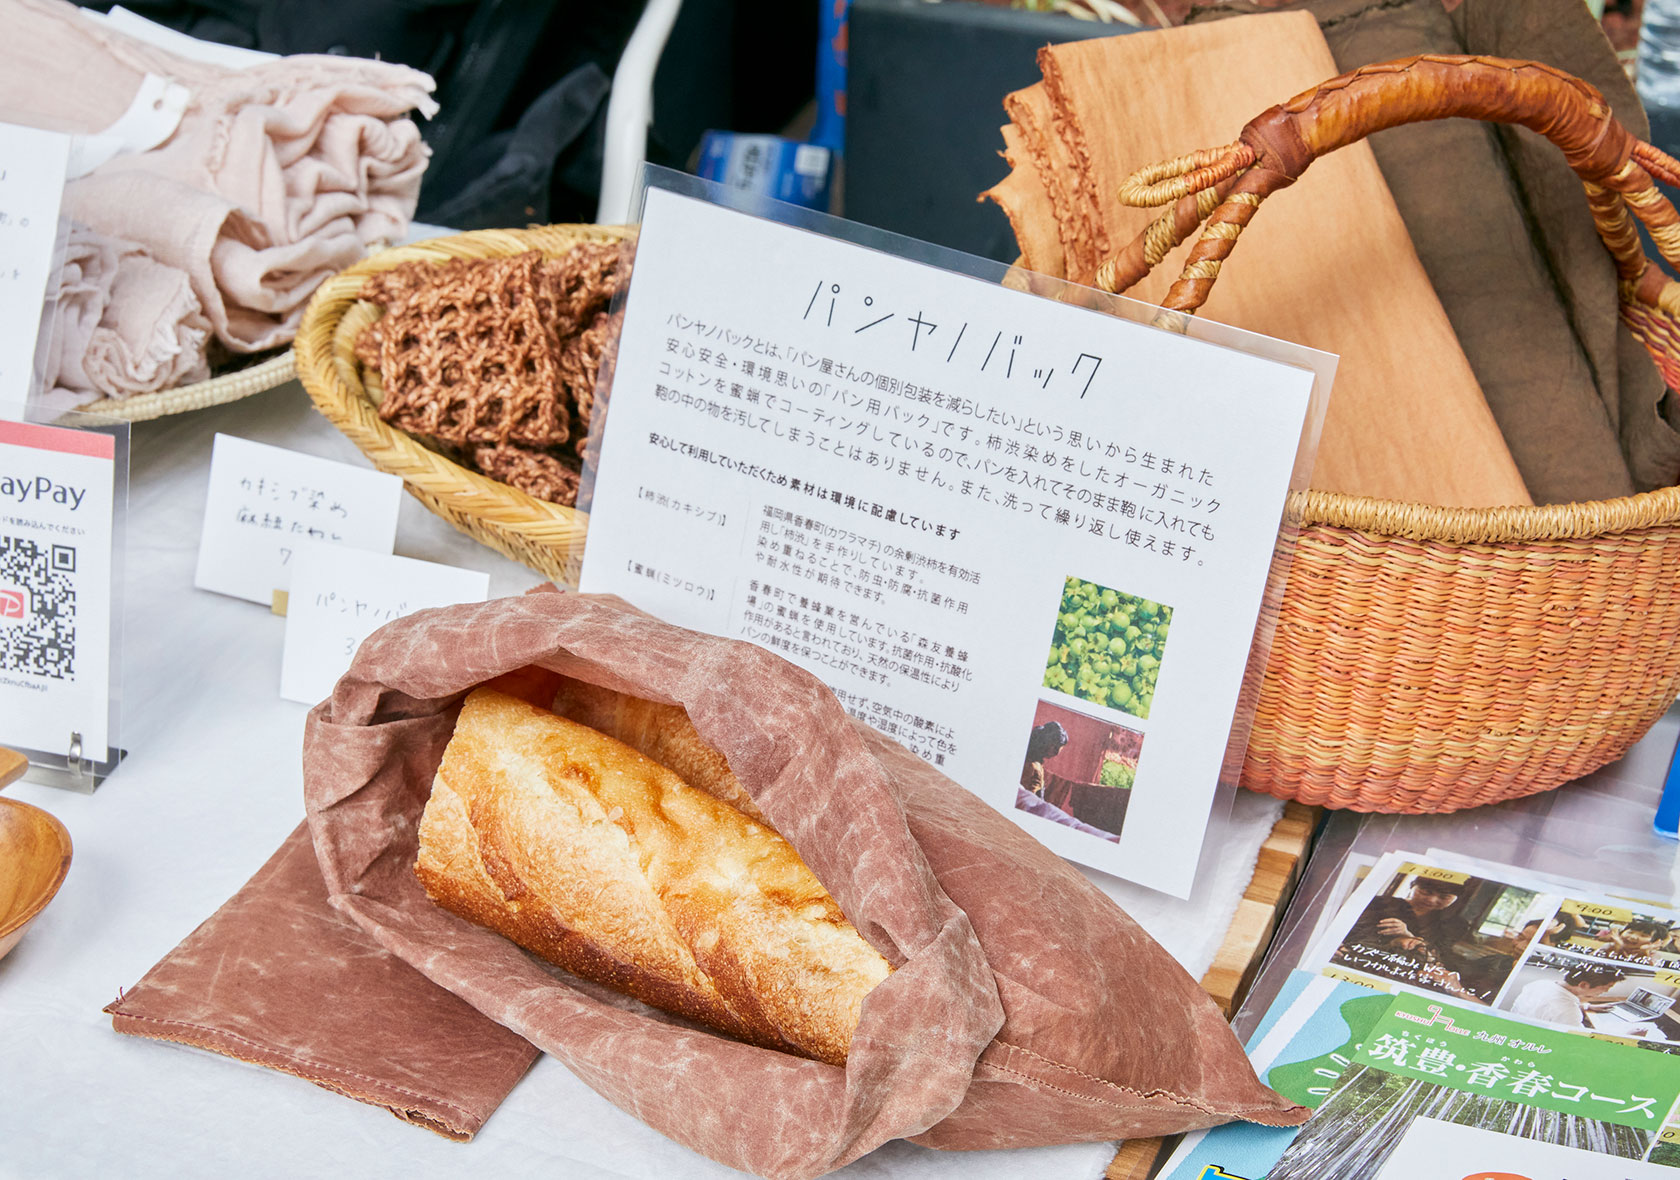 パンの個別包装を減らしたいと考案した柿渋染めの「パンヤノバック」（2020年よかとこビジネスプランコンテスト入賞）
                    